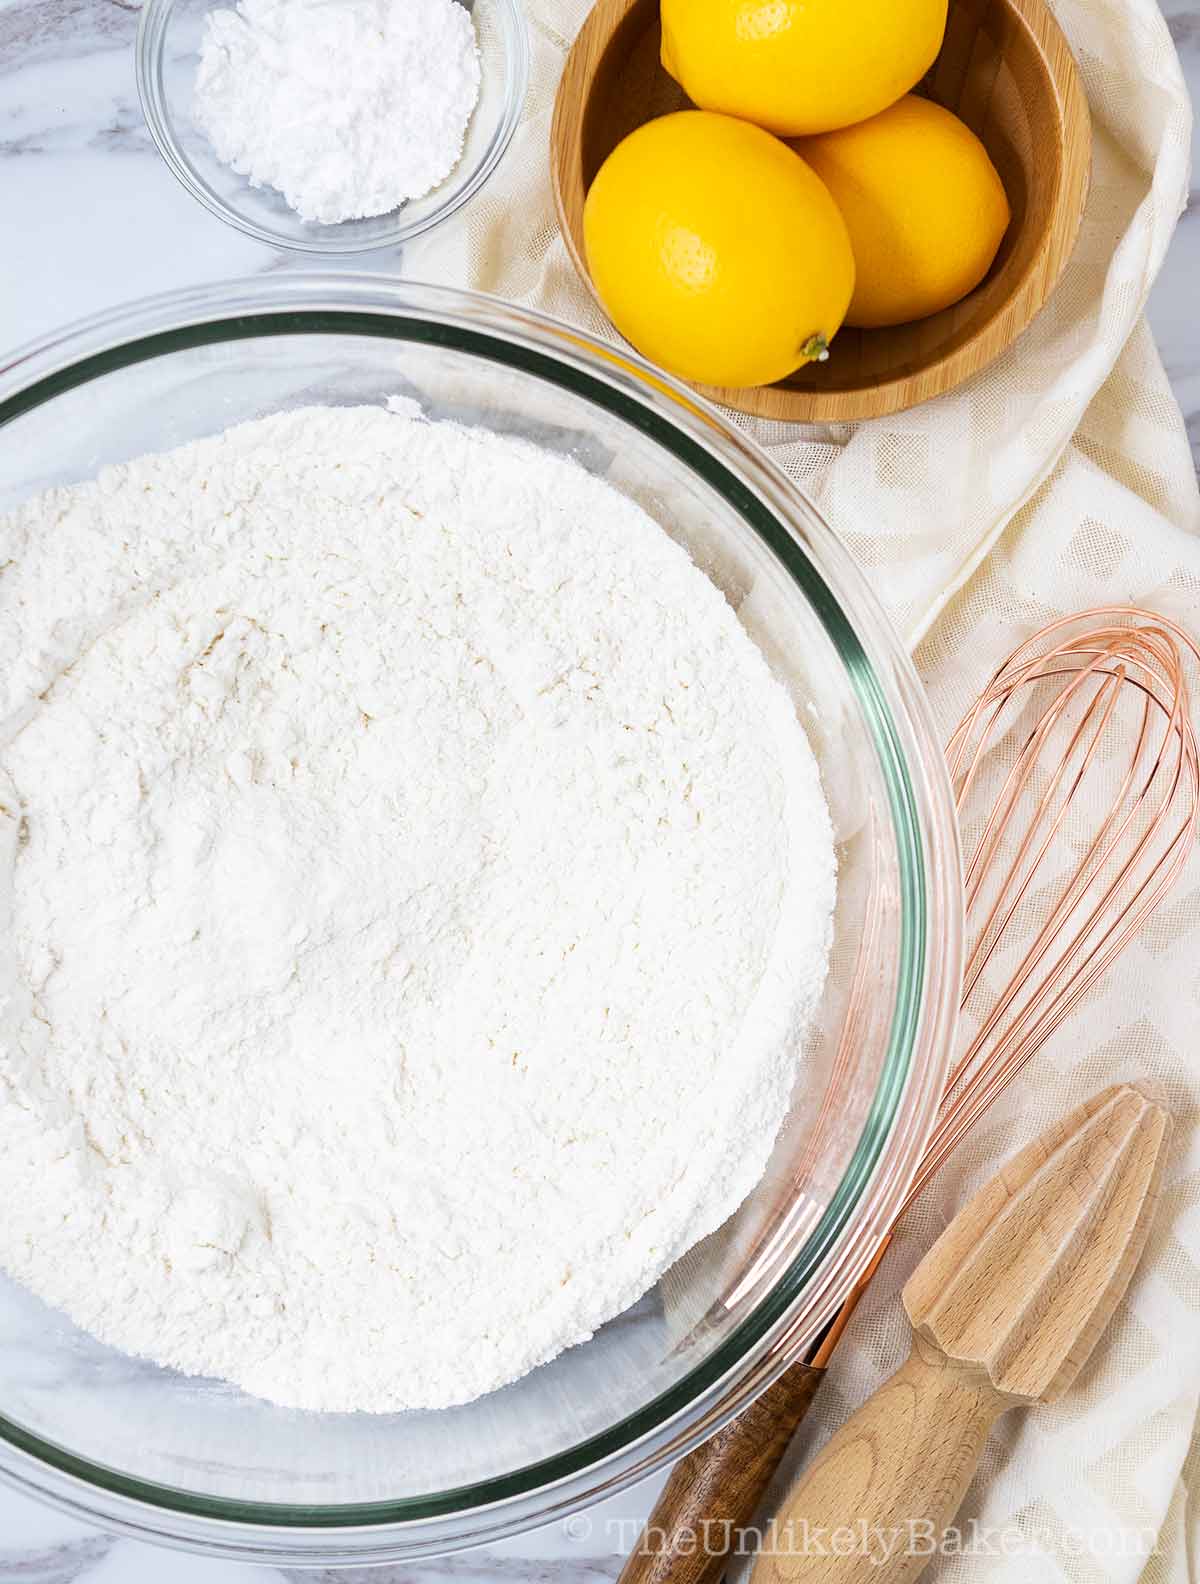 Flour mixture in a bowl.